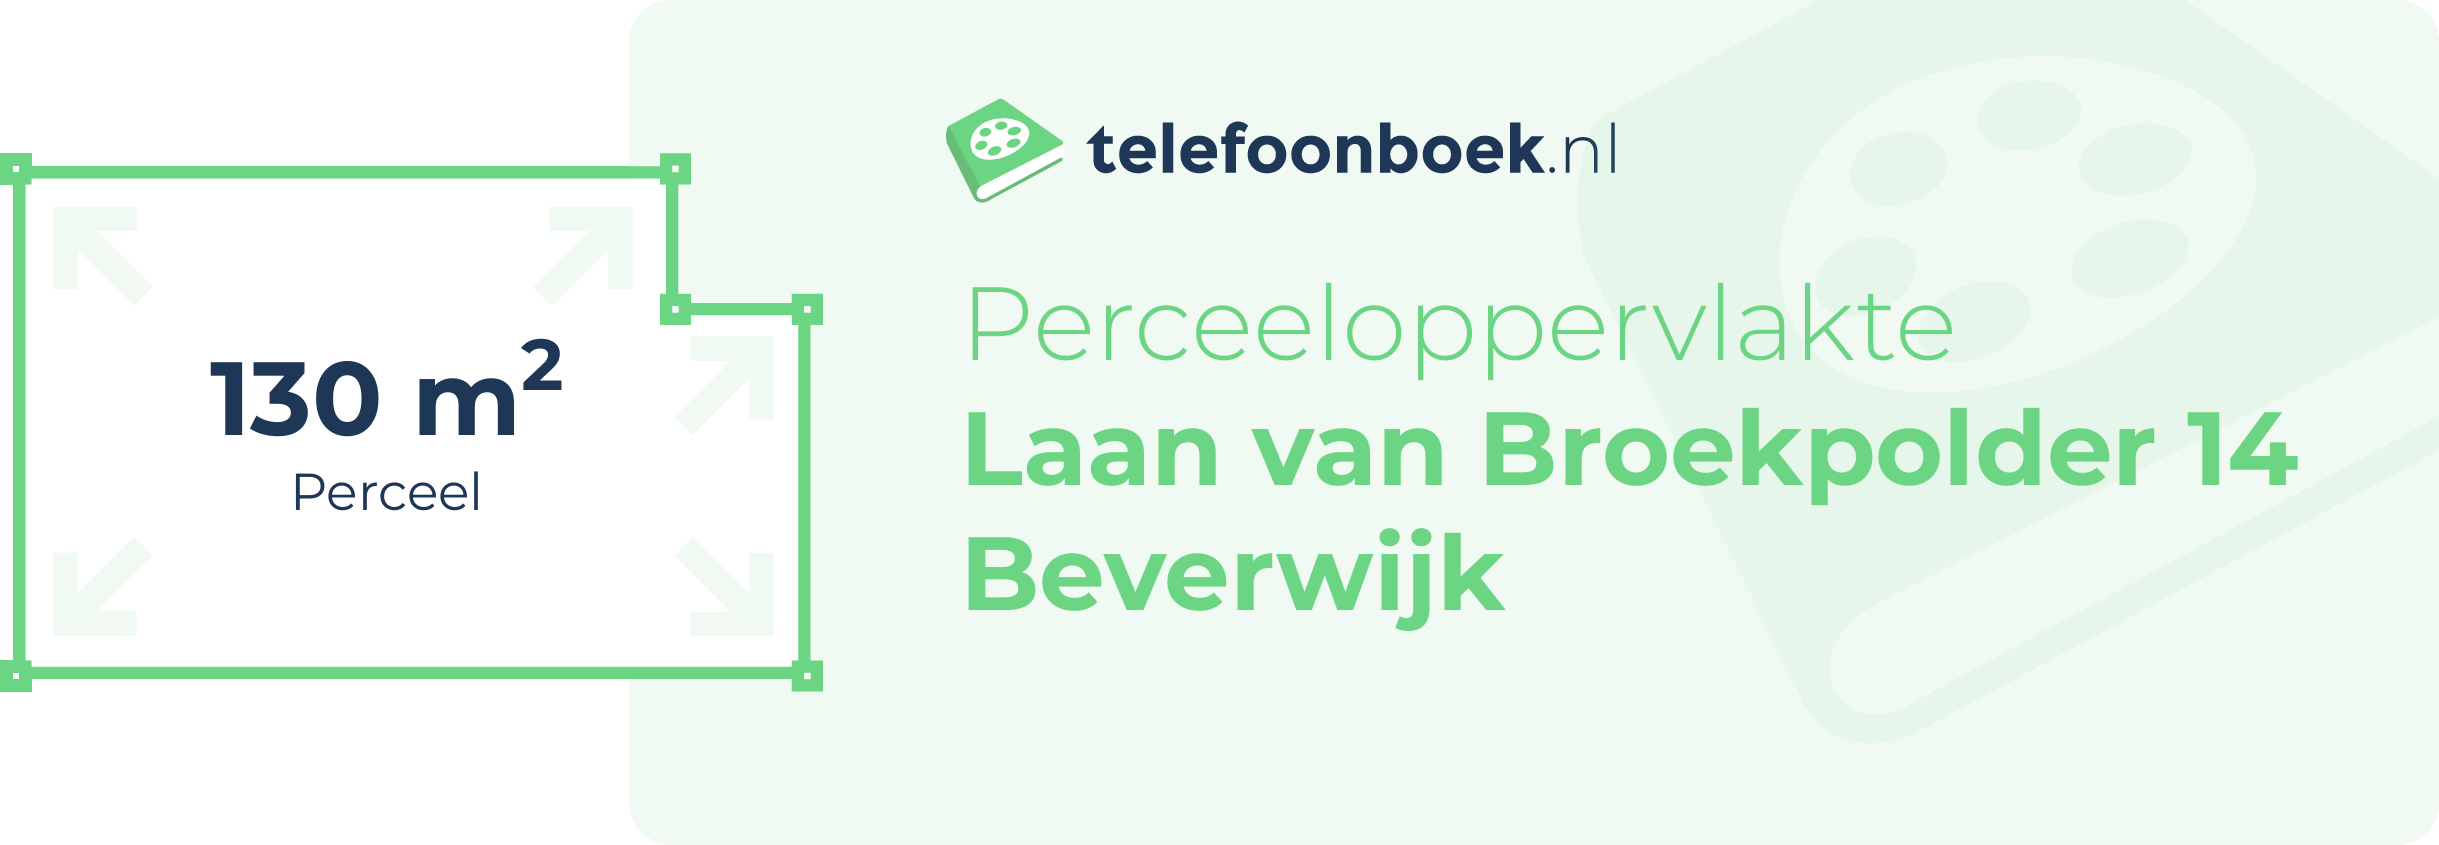 Perceeloppervlakte Laan Van Broekpolder 14 Beverwijk